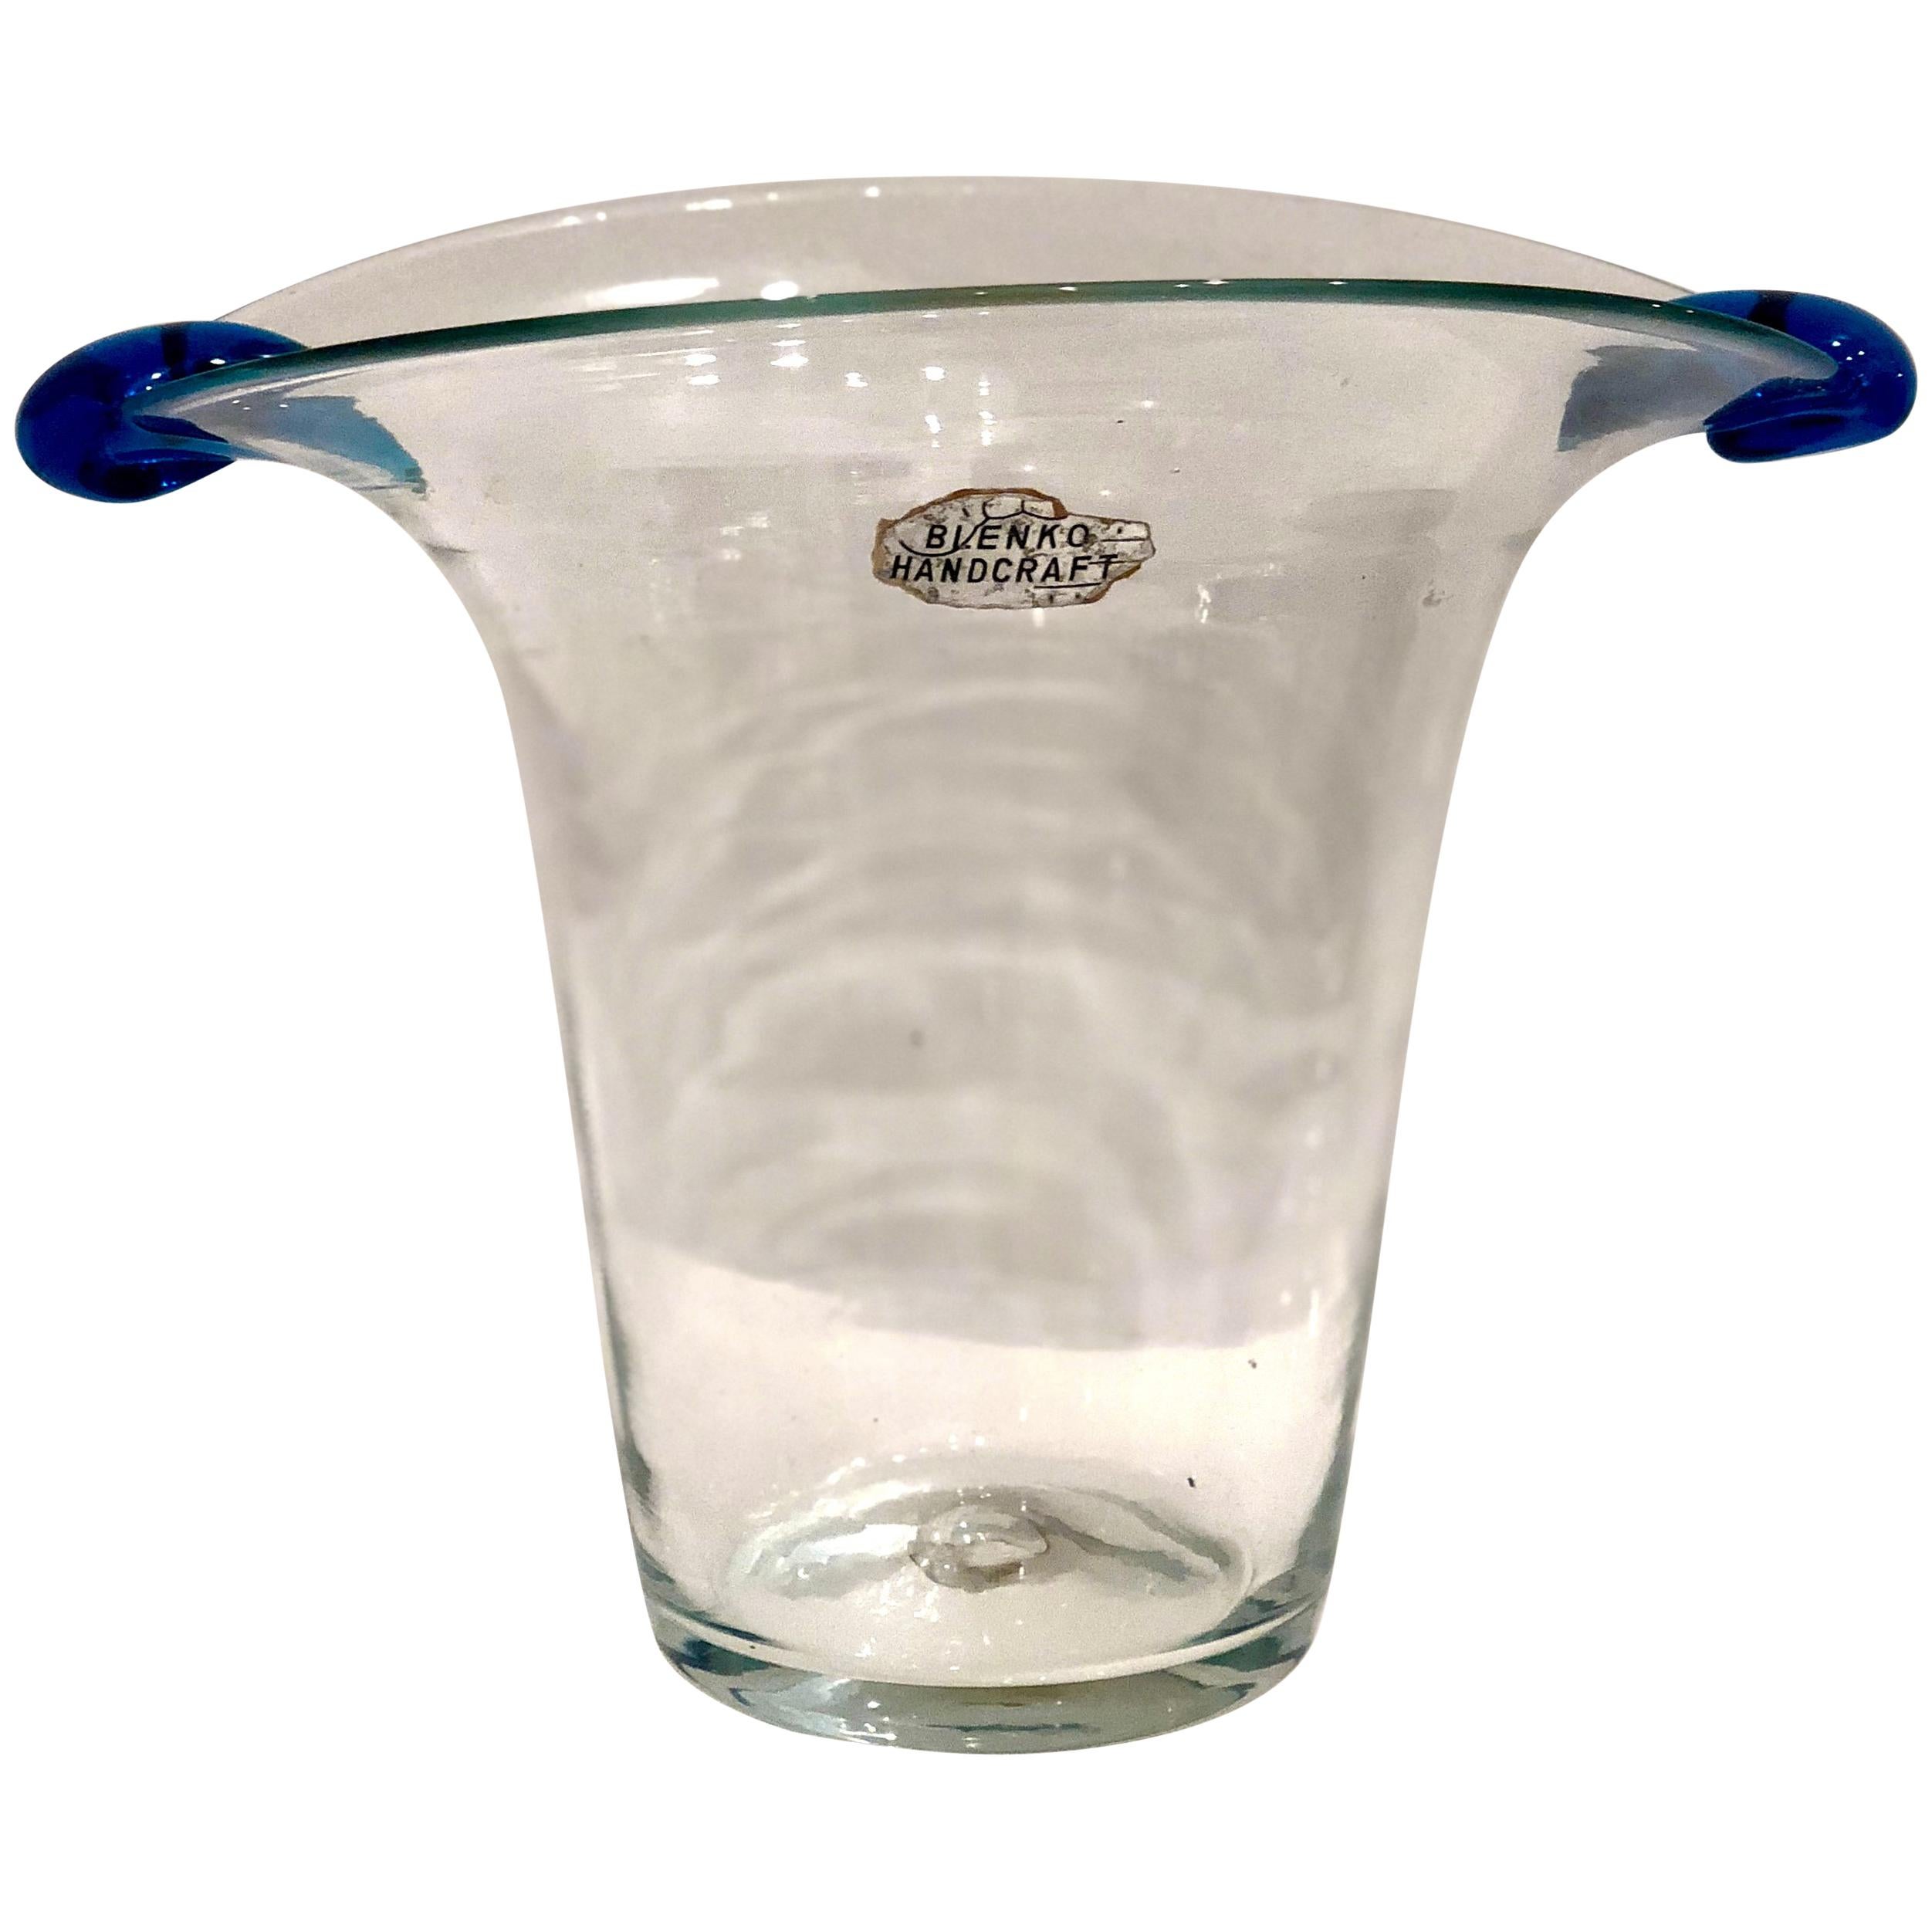 Blenko Handcrafted Midcentury Glass Vase